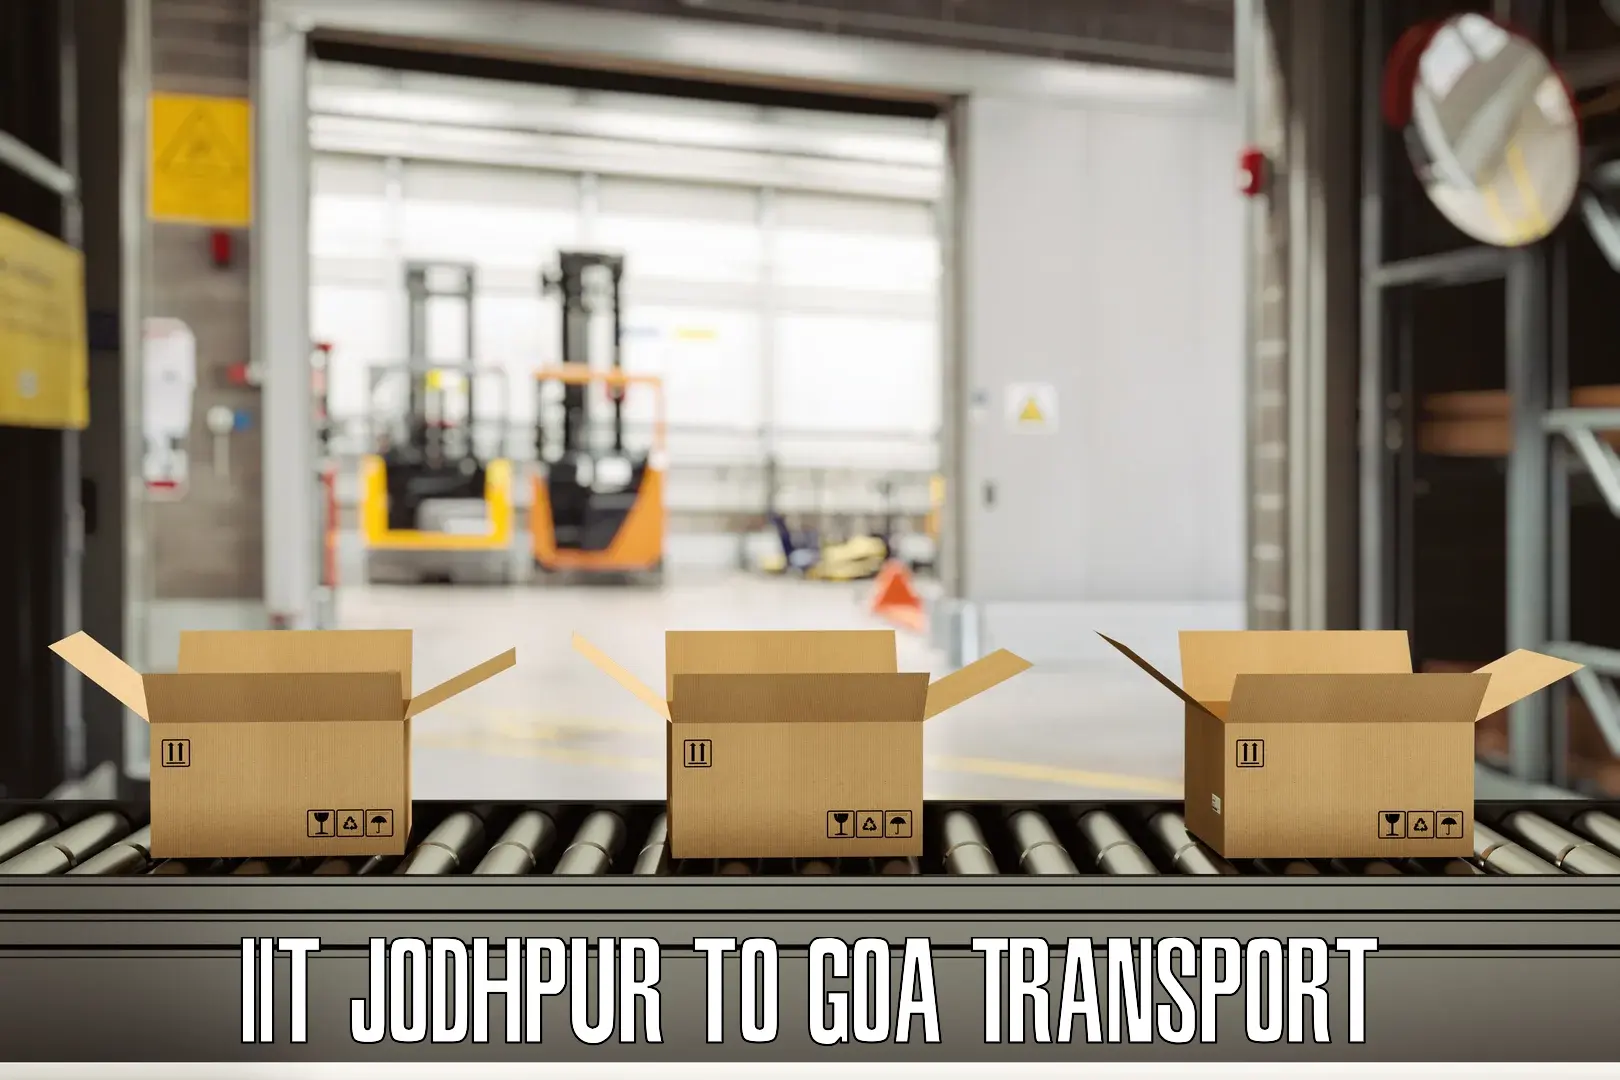 Transport in sharing IIT Jodhpur to Panjim